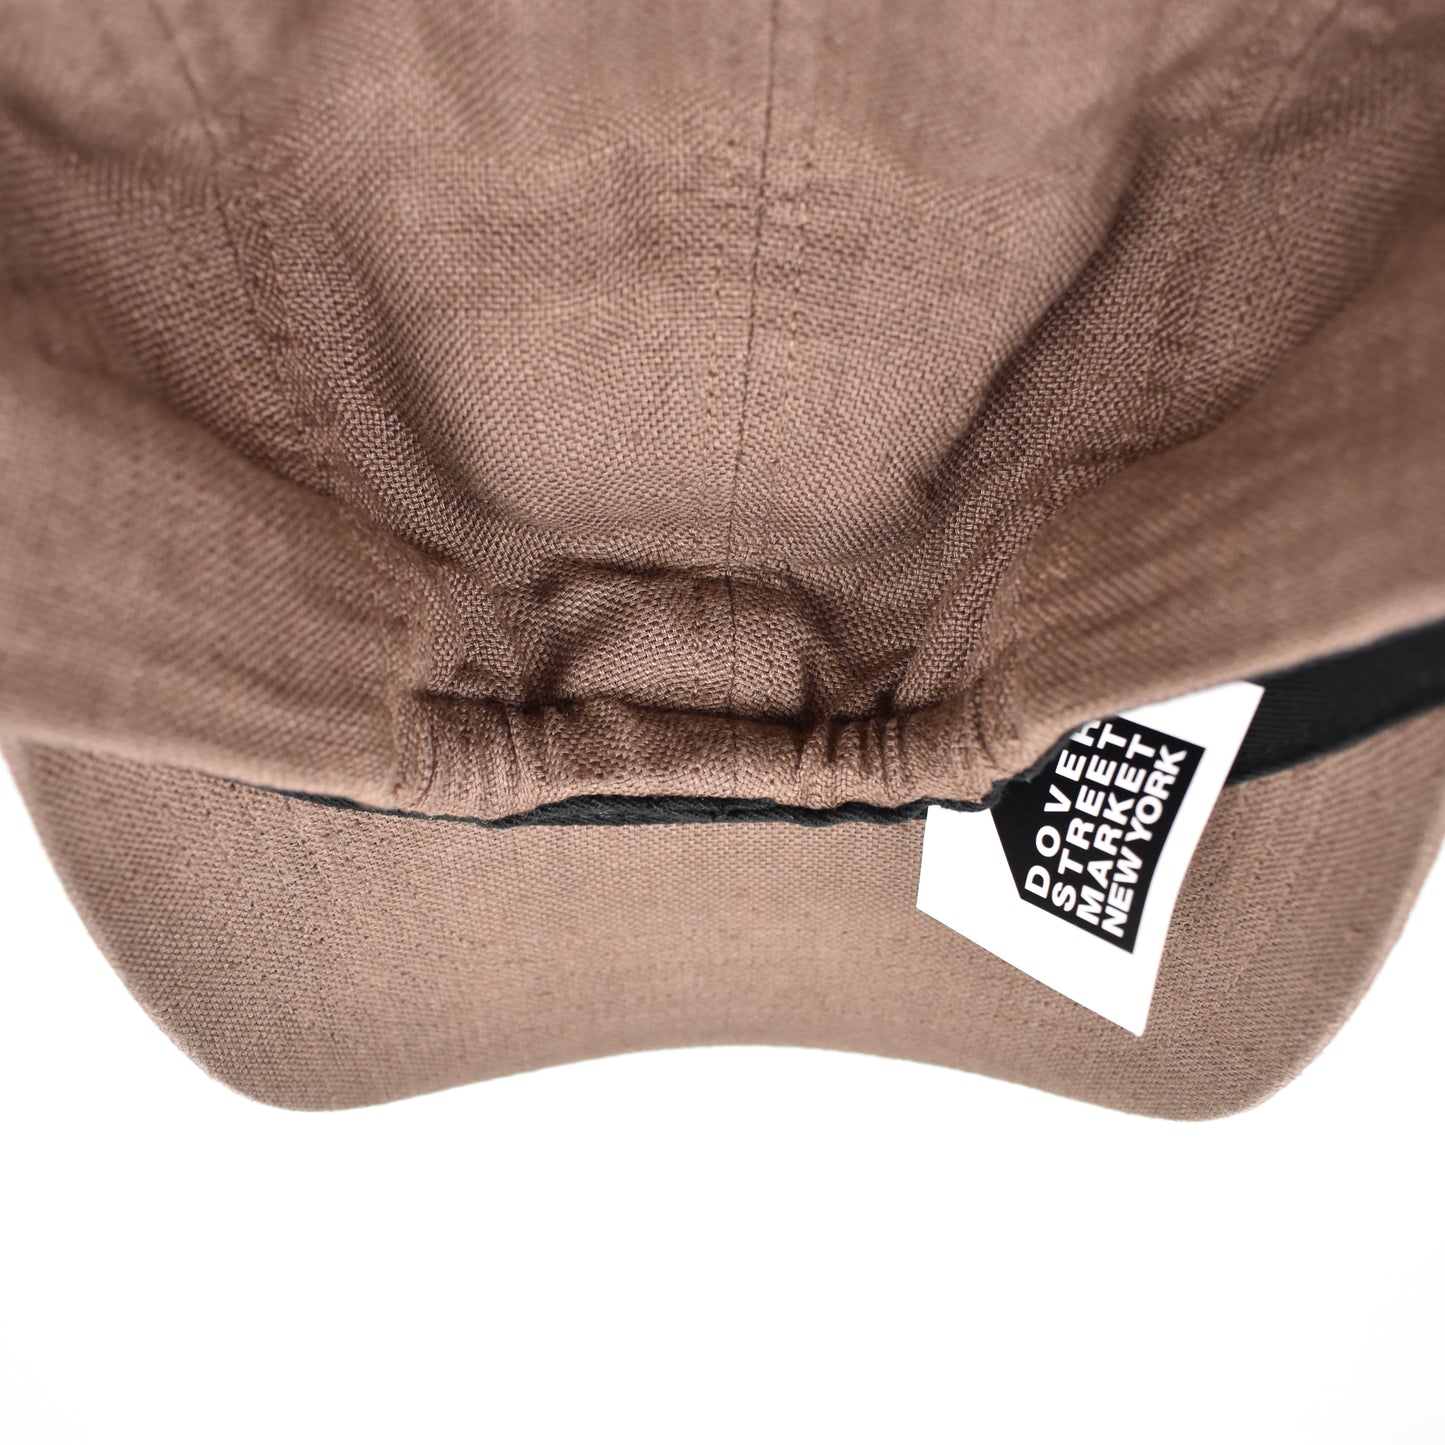 Supreme x Solbiati - Brown Linen Box Logo Stretch Back Hat